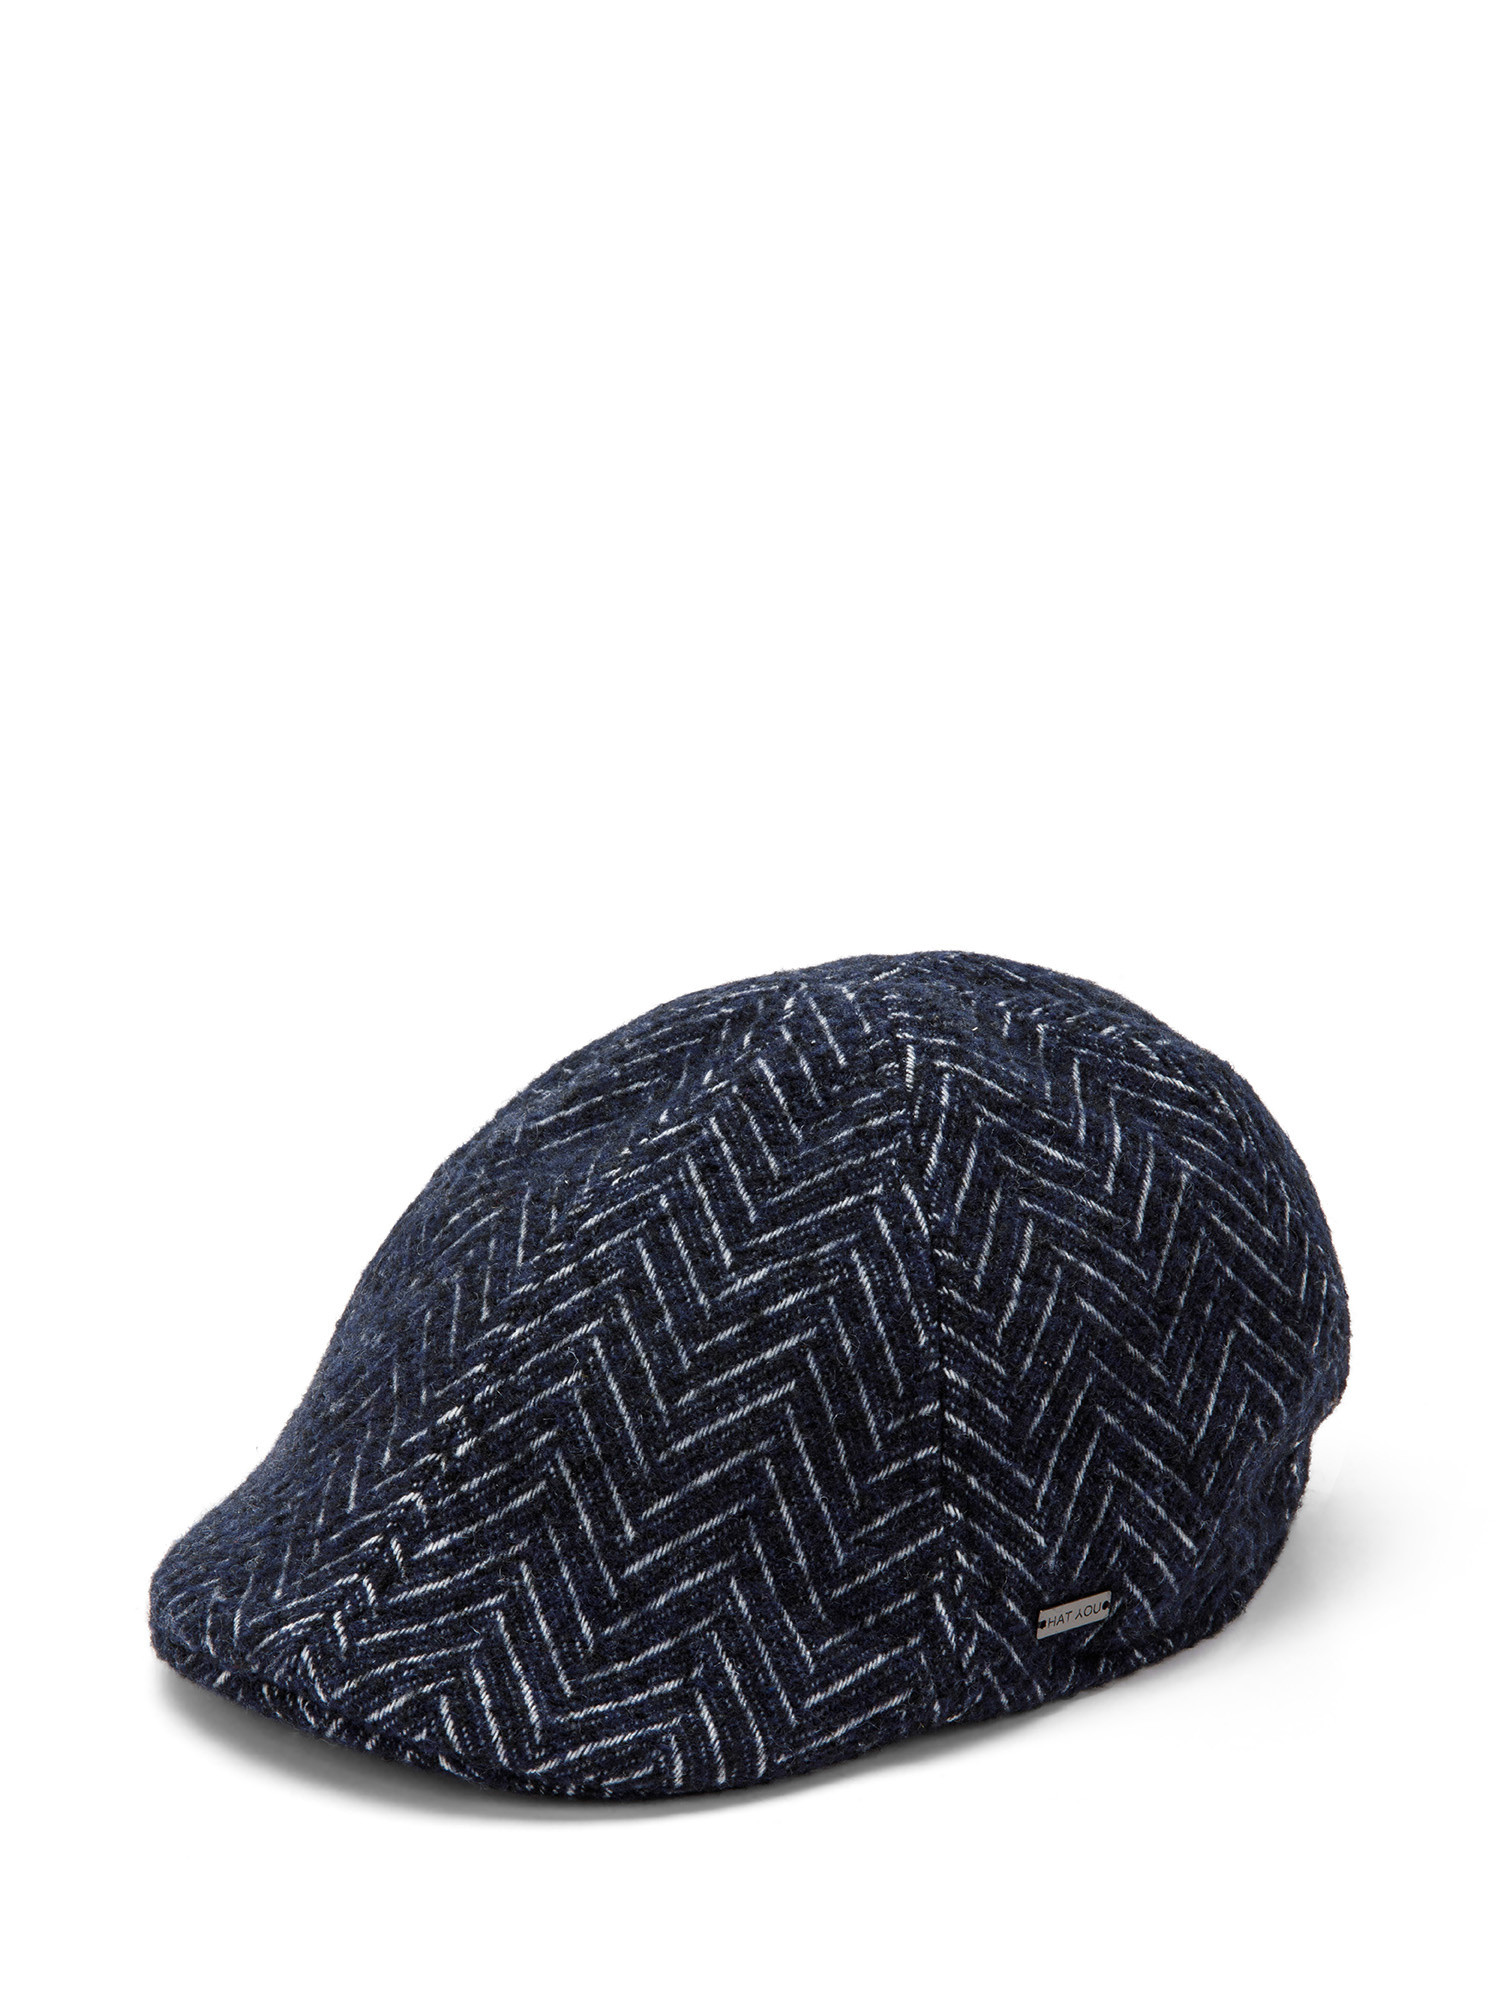 Luca D'Altieri - Flat cap in herringbone fabric, Blue, large image number 0